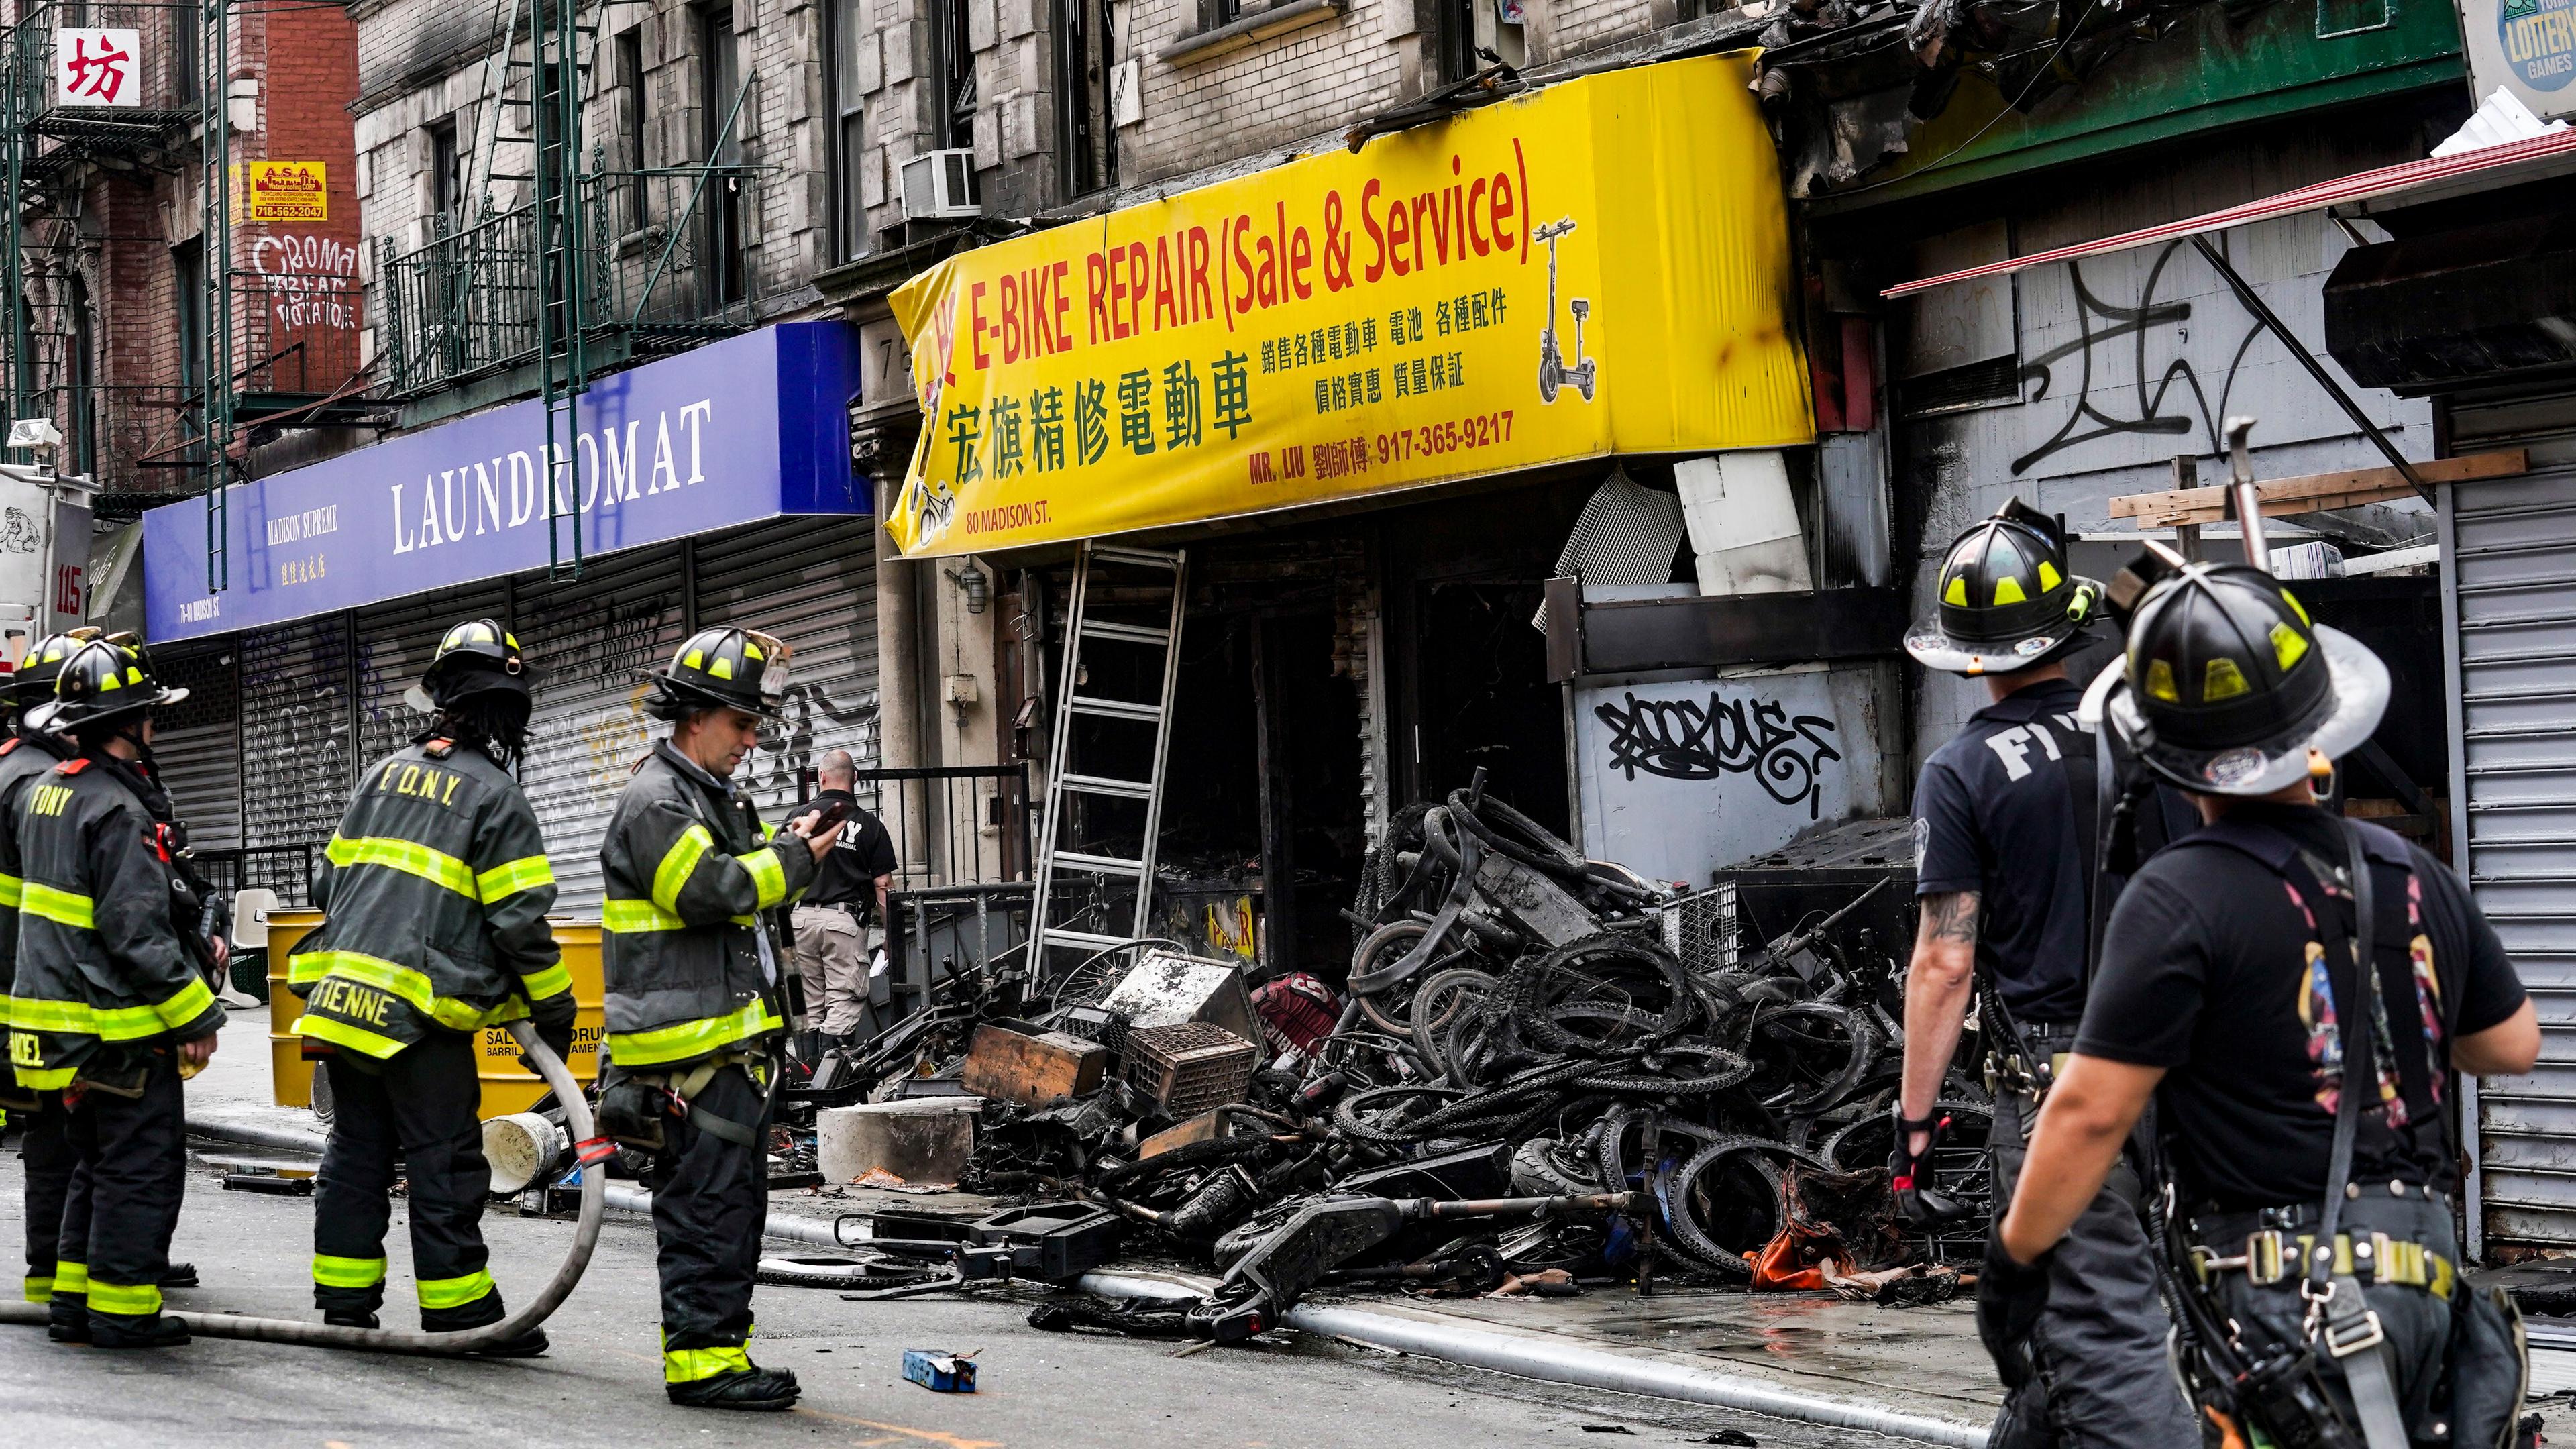 Feuerwehrleute und Ermittler stehen nach dem Brand eines Fahrradgeschäfts in New york